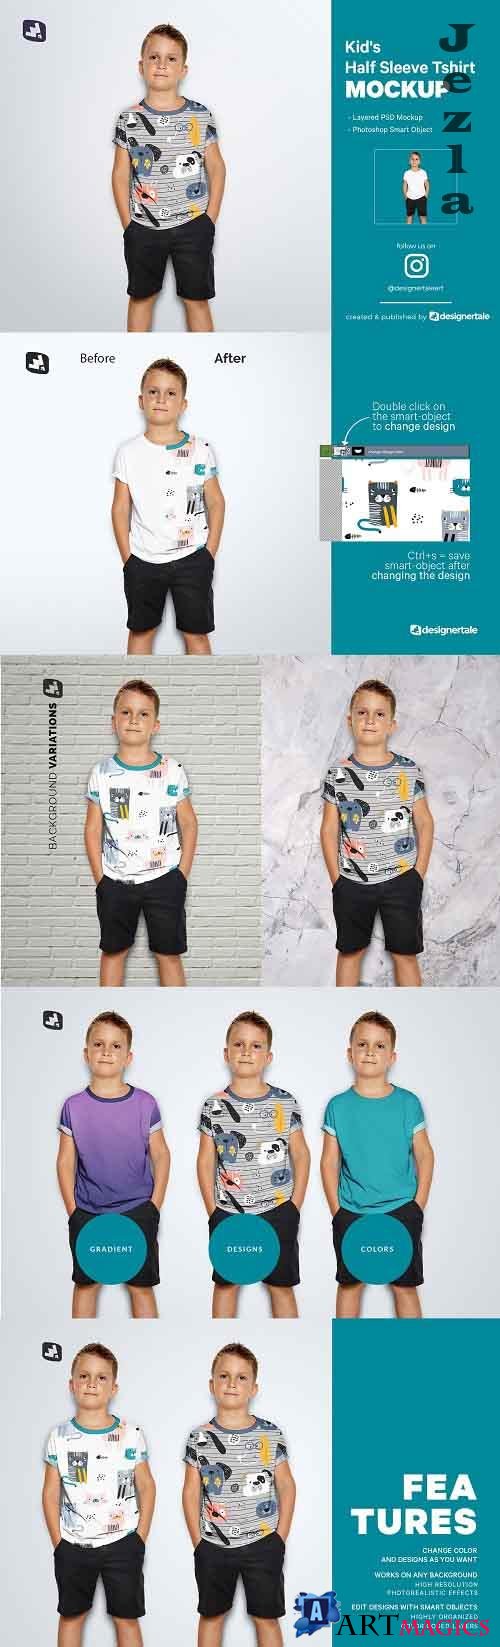 Kid's Half Sleeve Tshirt Mockup - 5242214